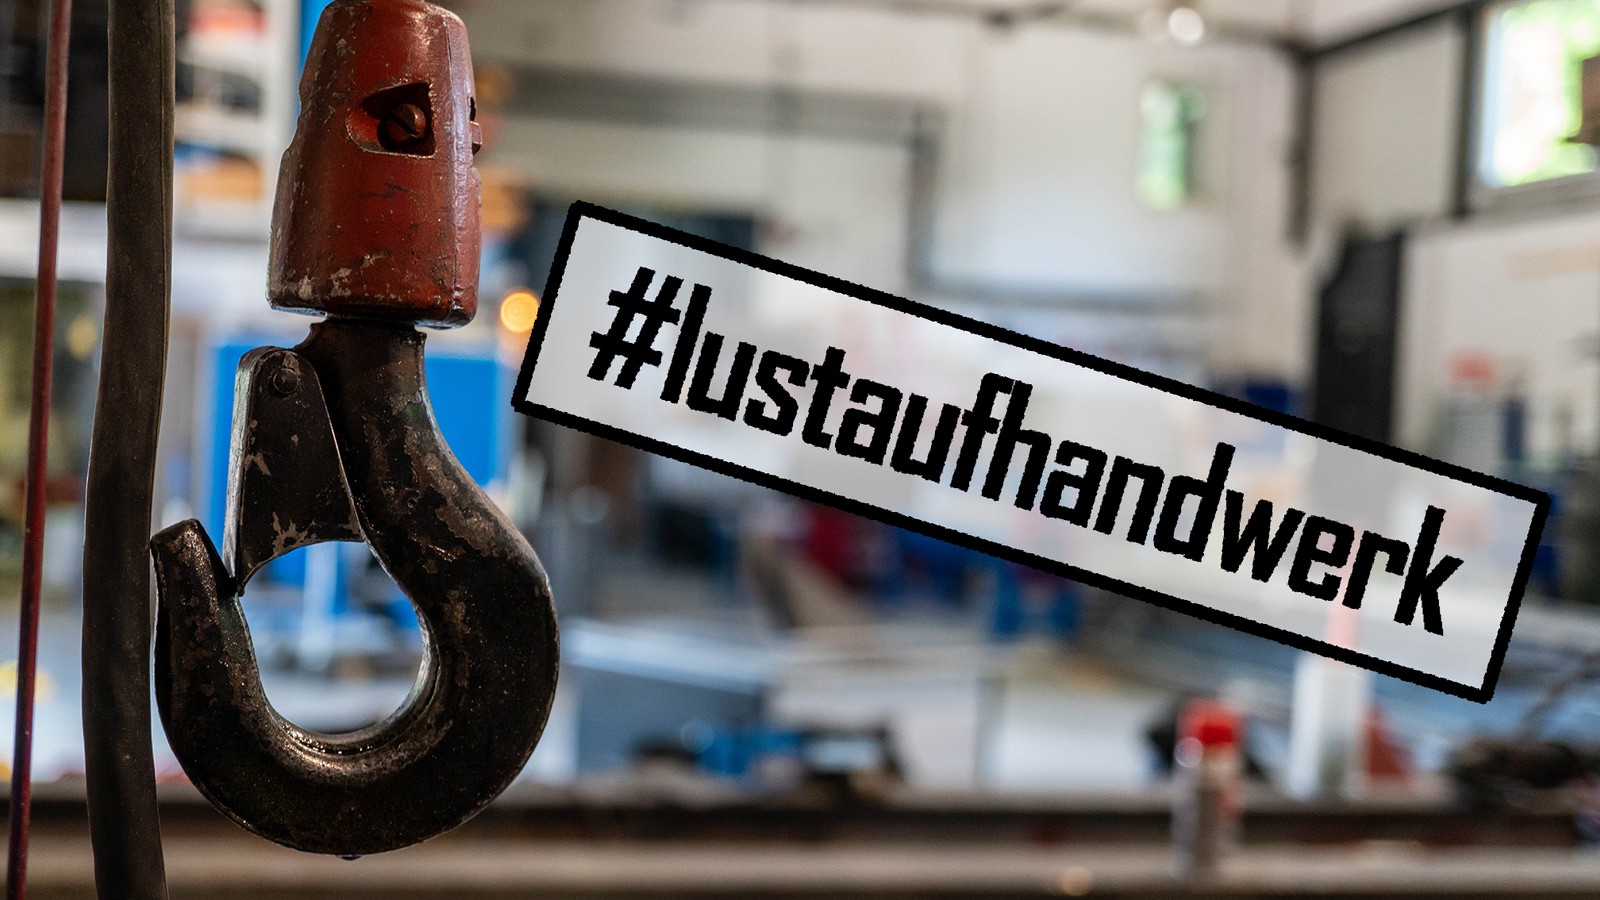 Unter #lustaufhandwerk haben Handwerker bereits über 23.000 Beiträge auf Instagram veröffentlicht.